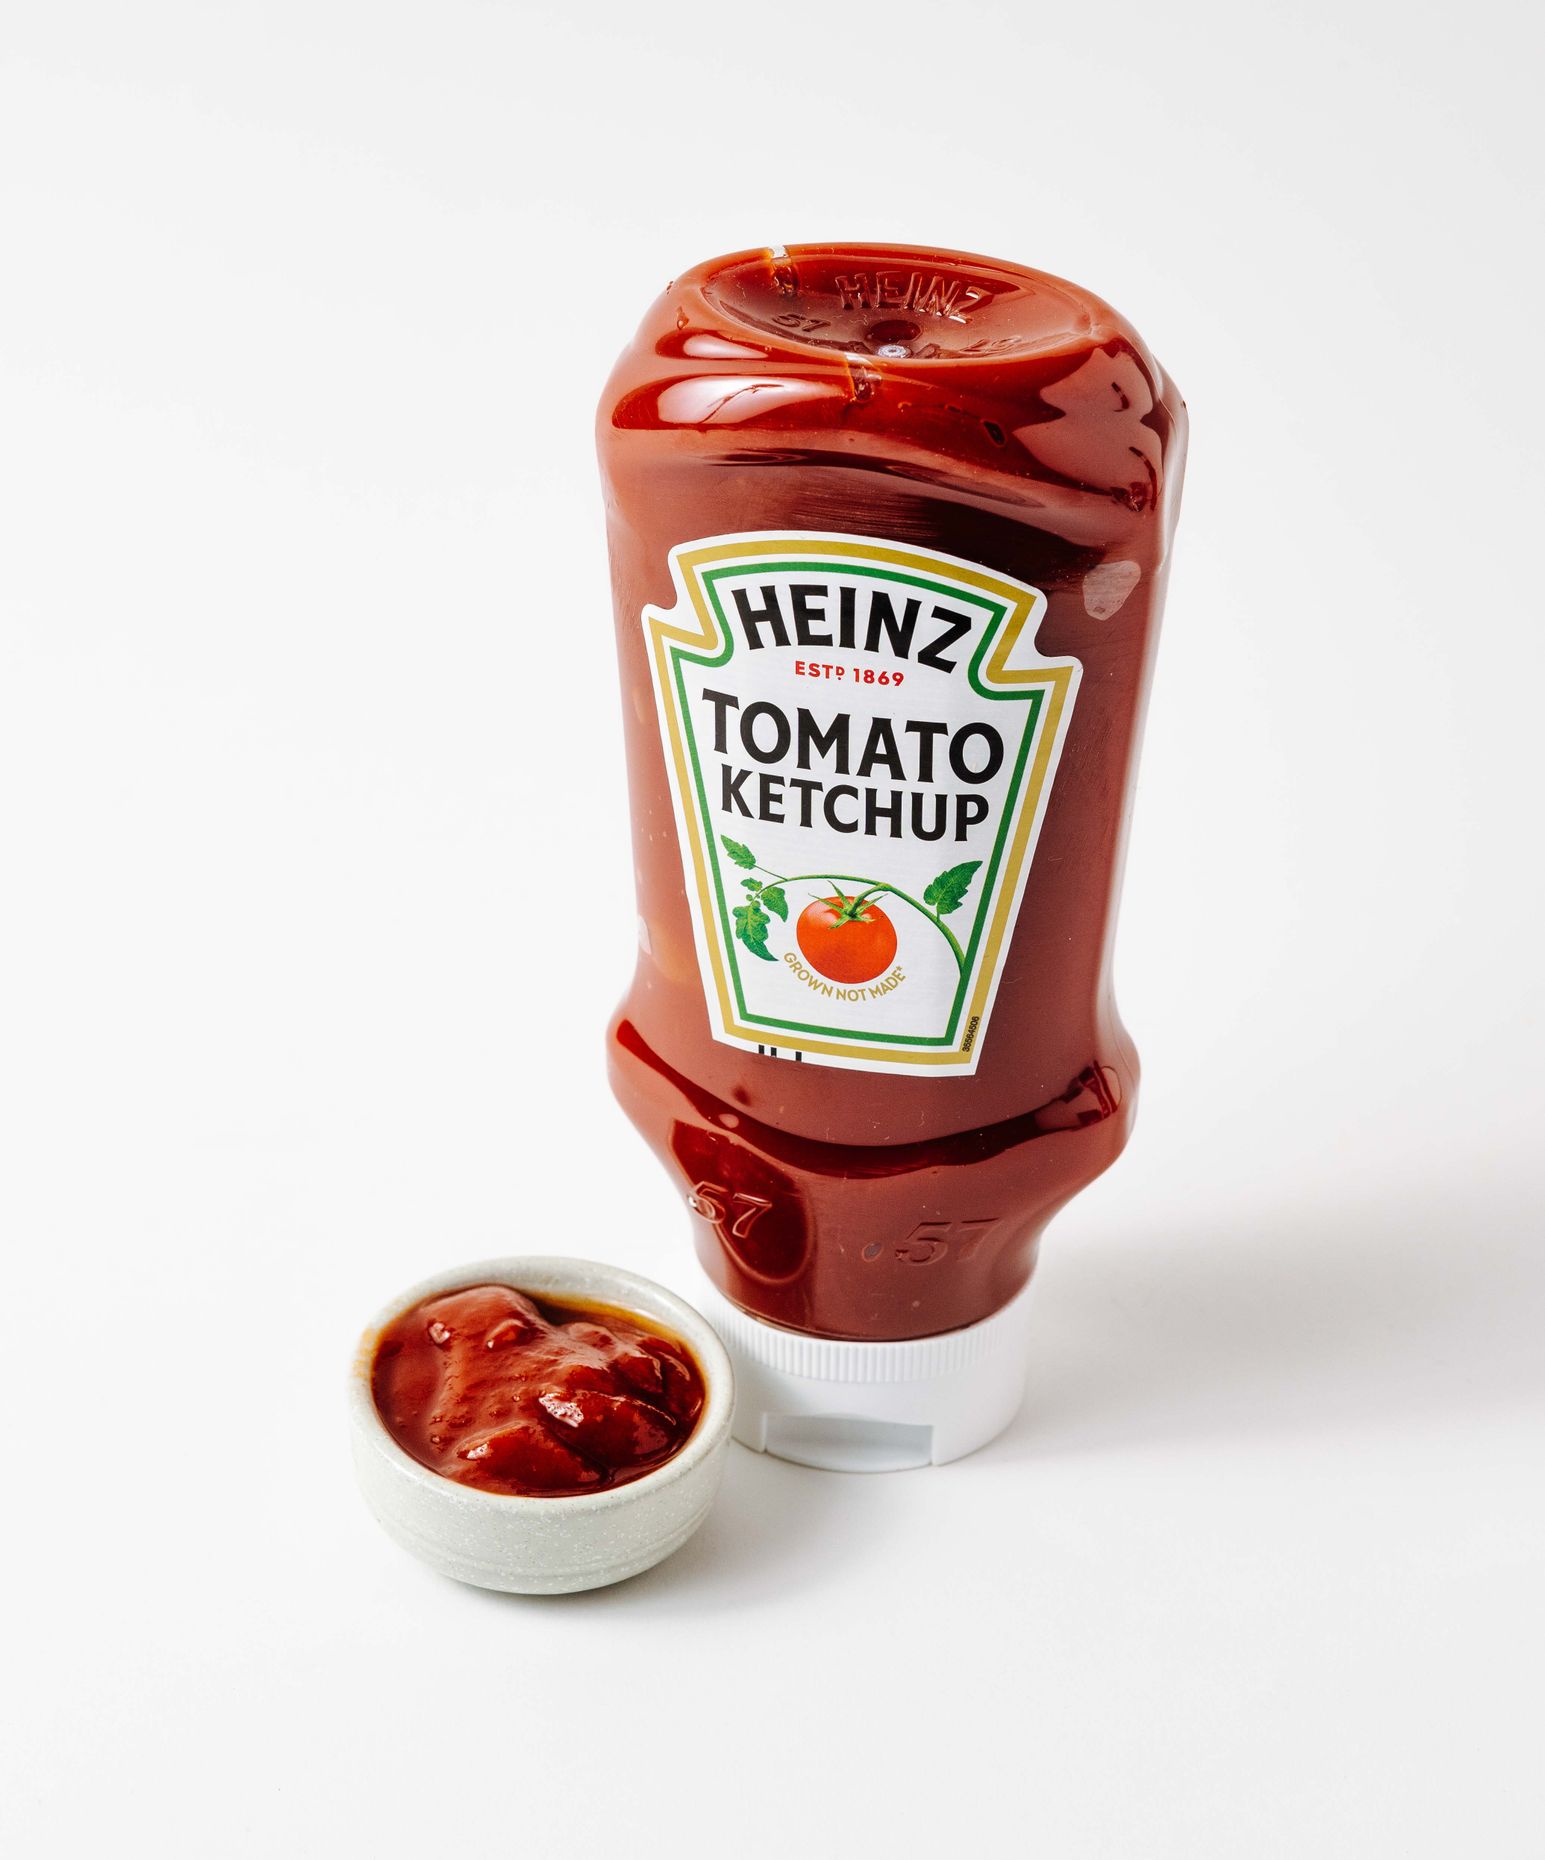 Heinz Tomaten Ketchup